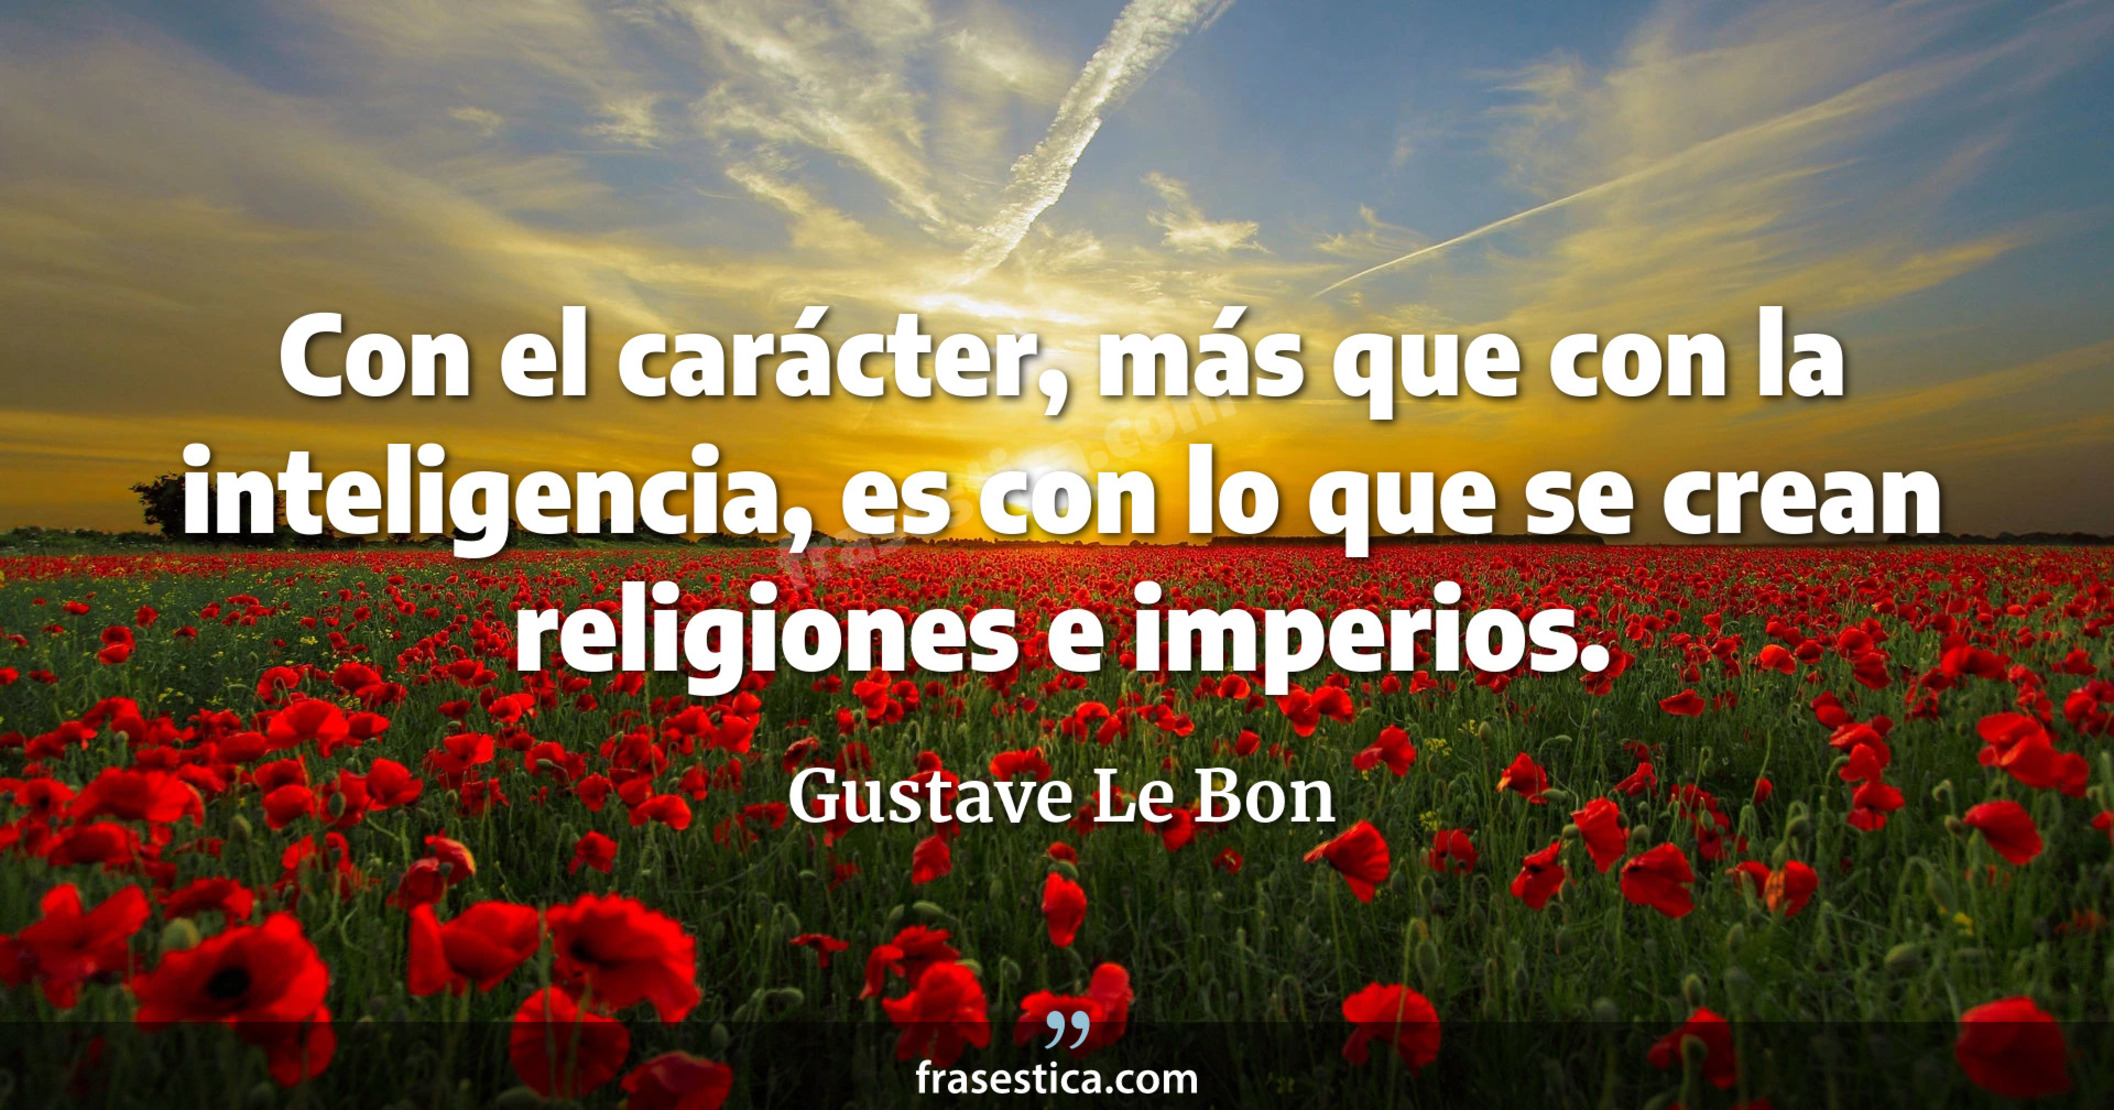 Con el carácter, más que con la inteligencia, es con lo que se crean religiones e imperios. - Gustave Le Bon